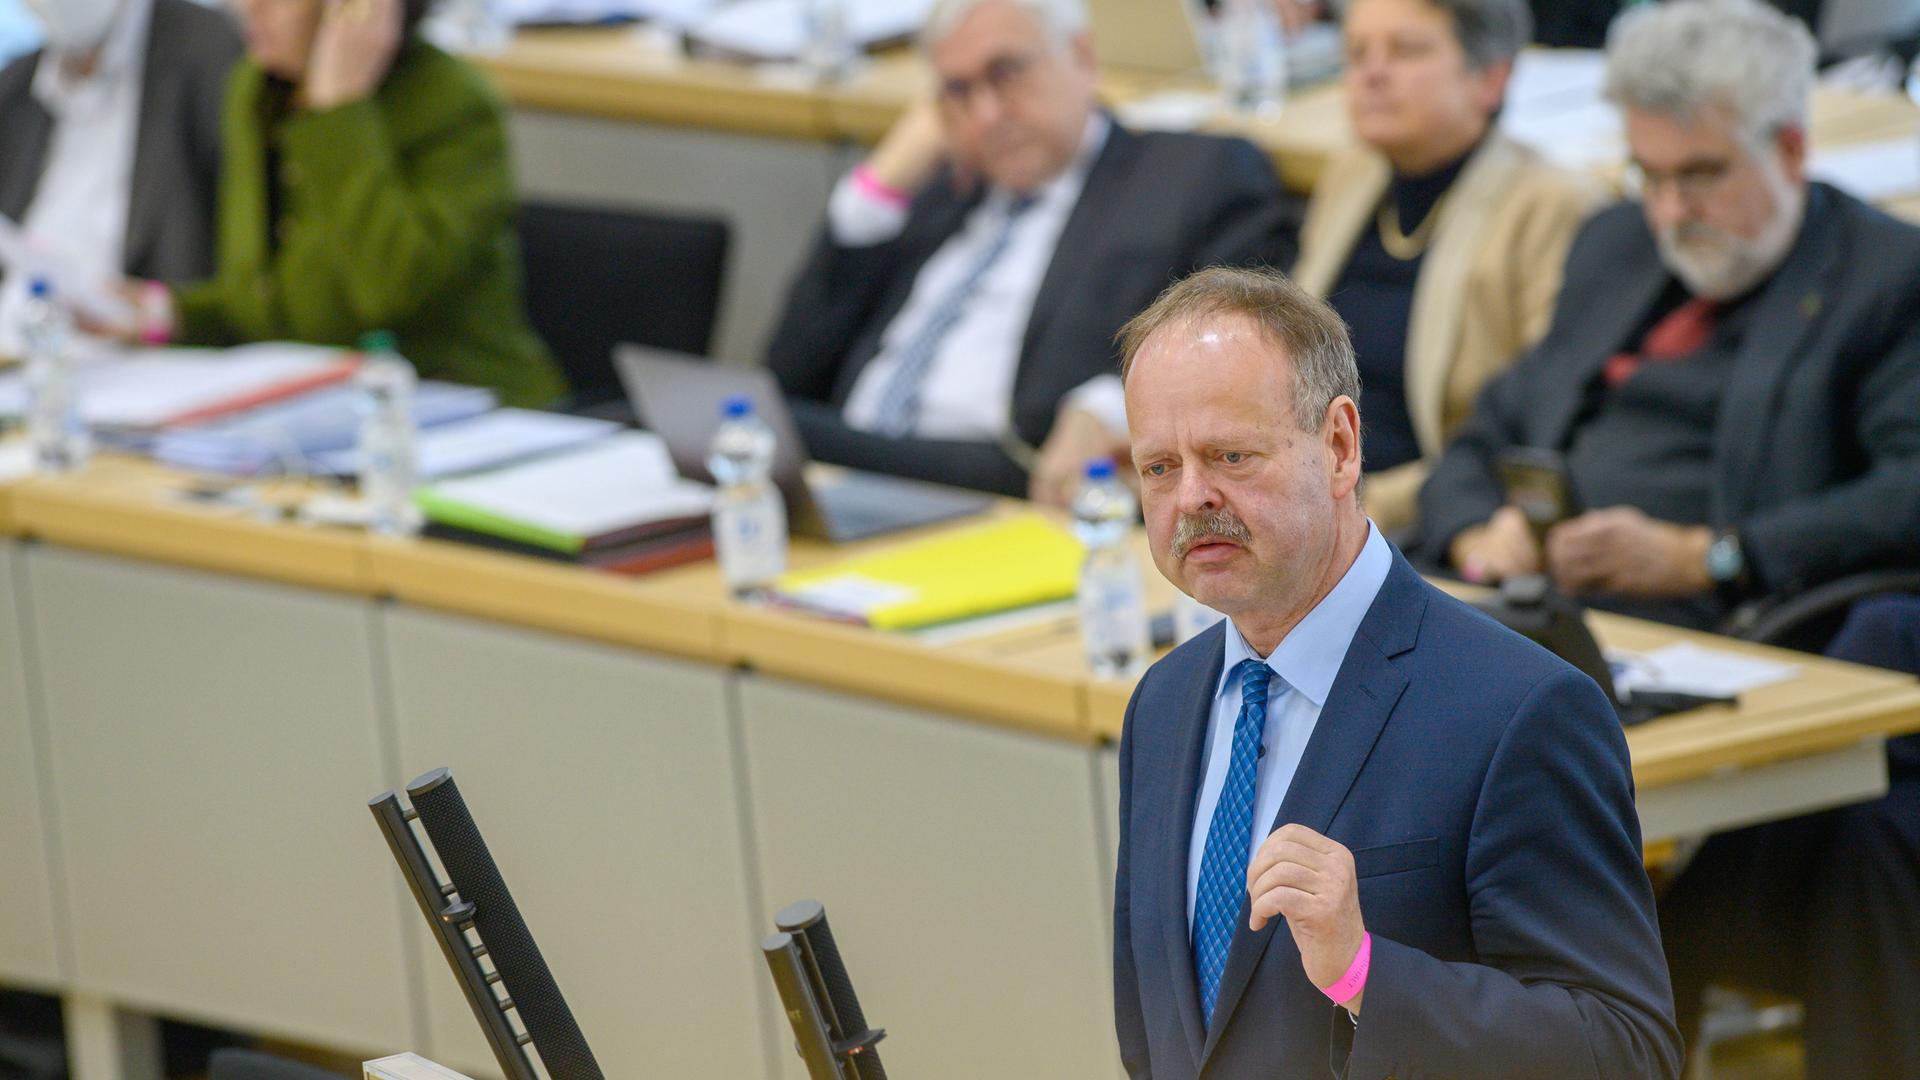 Wulf Gallert (Die Linke) spricht im Plenarsaal des Landtages von Sachsen-Anhalt zu den Abgeordneten. Nach einer Regierungserklärung des Ministerpräsidenten zur Lage in der Ukraine ging es unter anderem über die Schulsozialarbeit.